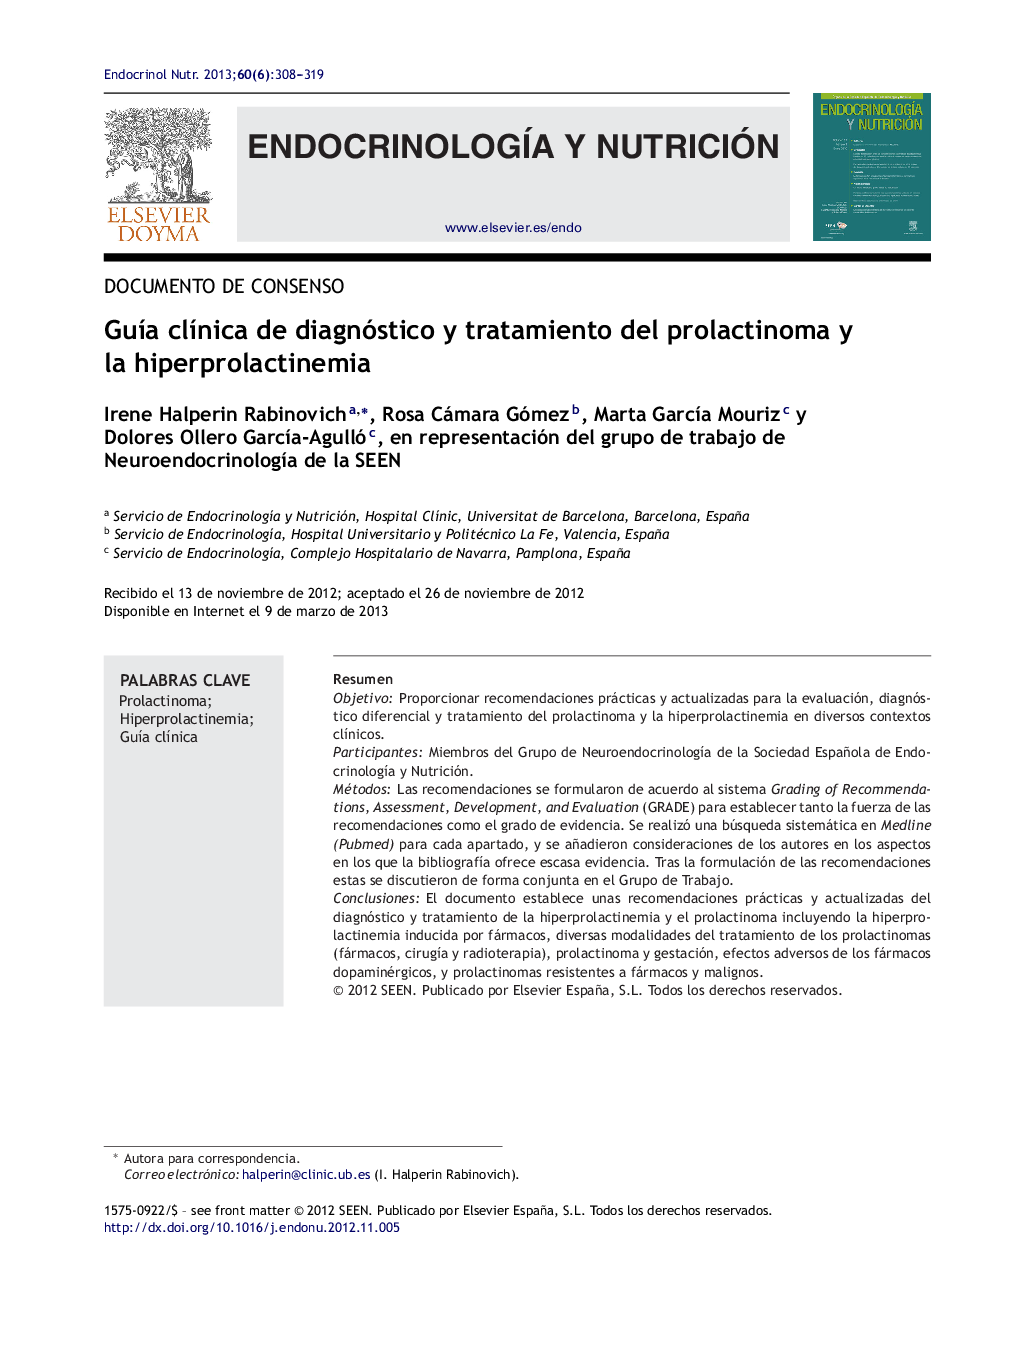 Guía clínica de diagnóstico y tratamiento del prolactinoma y la hiperprolactinemia